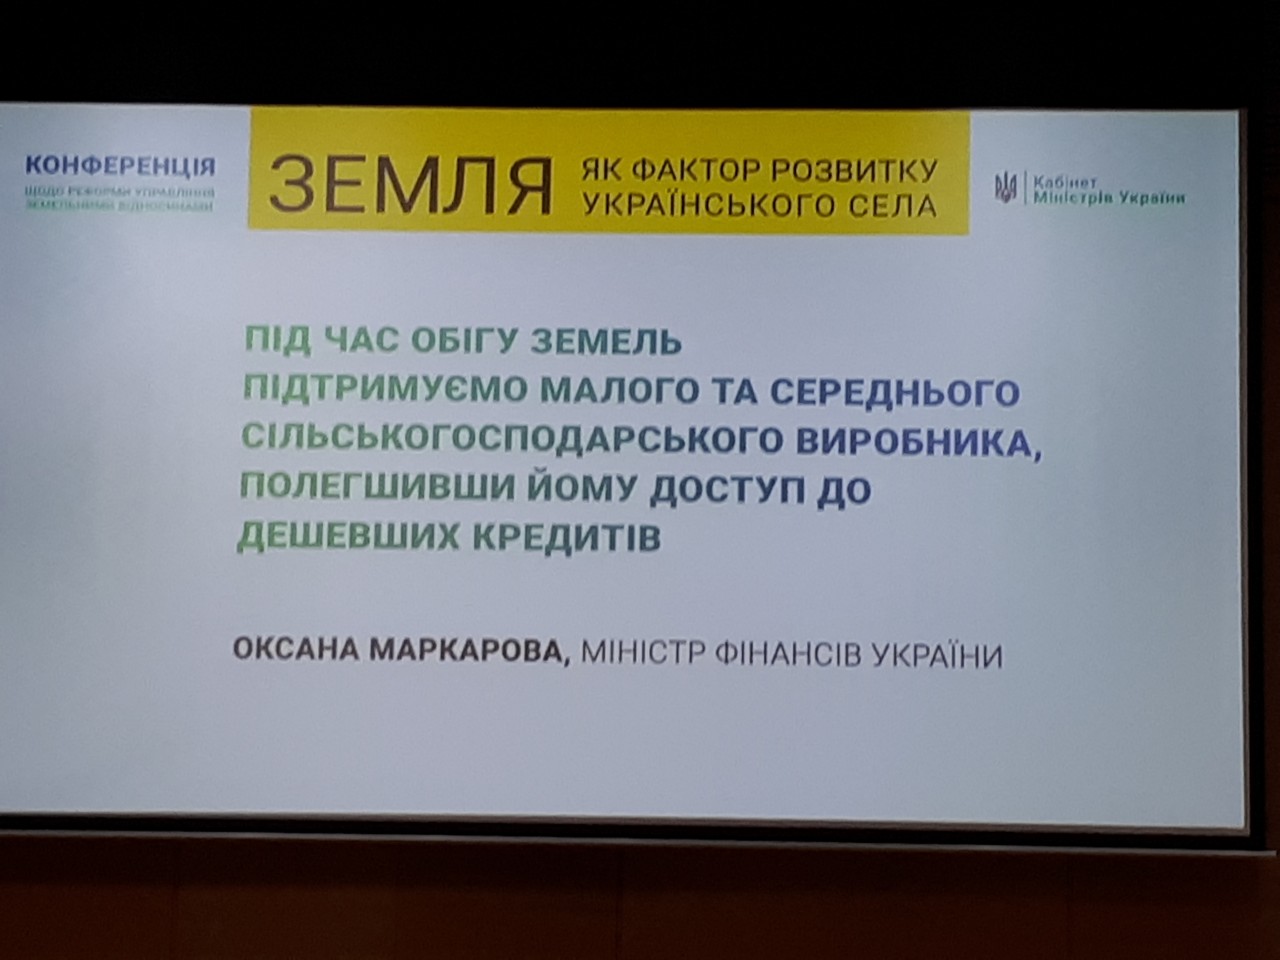 Додатково конференція щодо реформи управління земельними відносинами «Земля як фактор розвитку українського села» 10